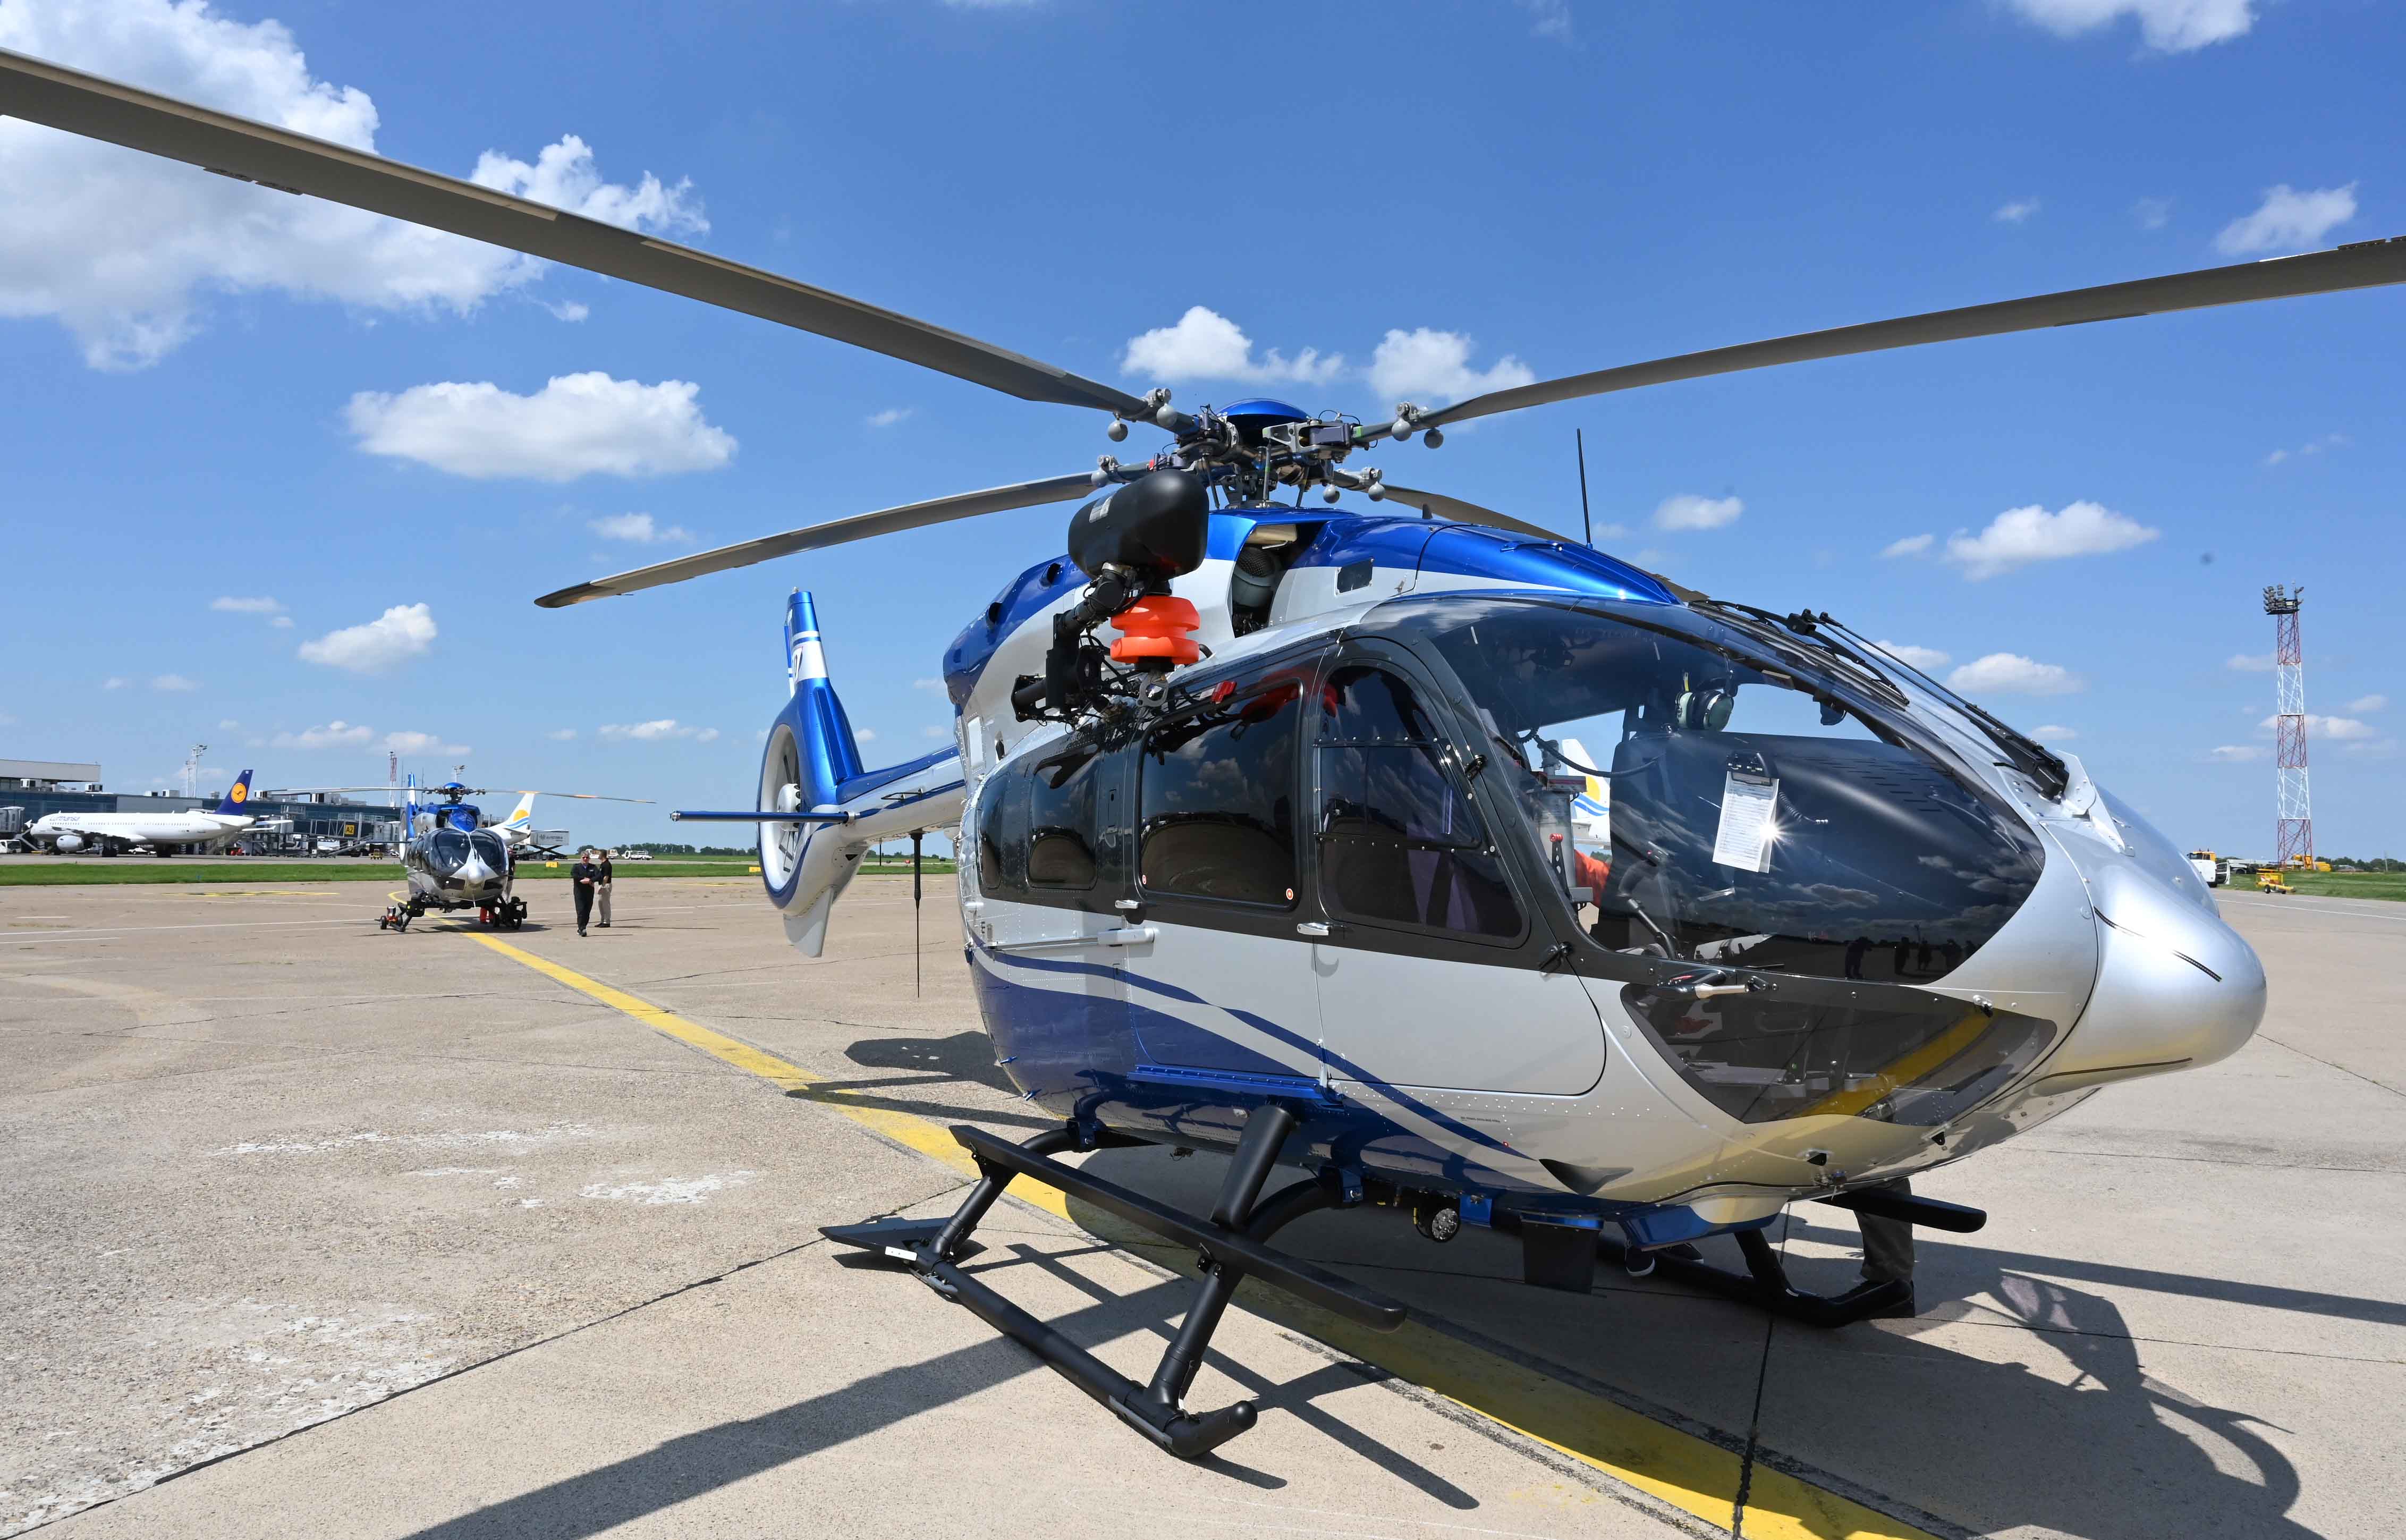 Хеликоптерска јединица МУП-а добила два нова хеликоптера Х-145М, чиме је почела обнова флоте која није занављана скоро 40 година